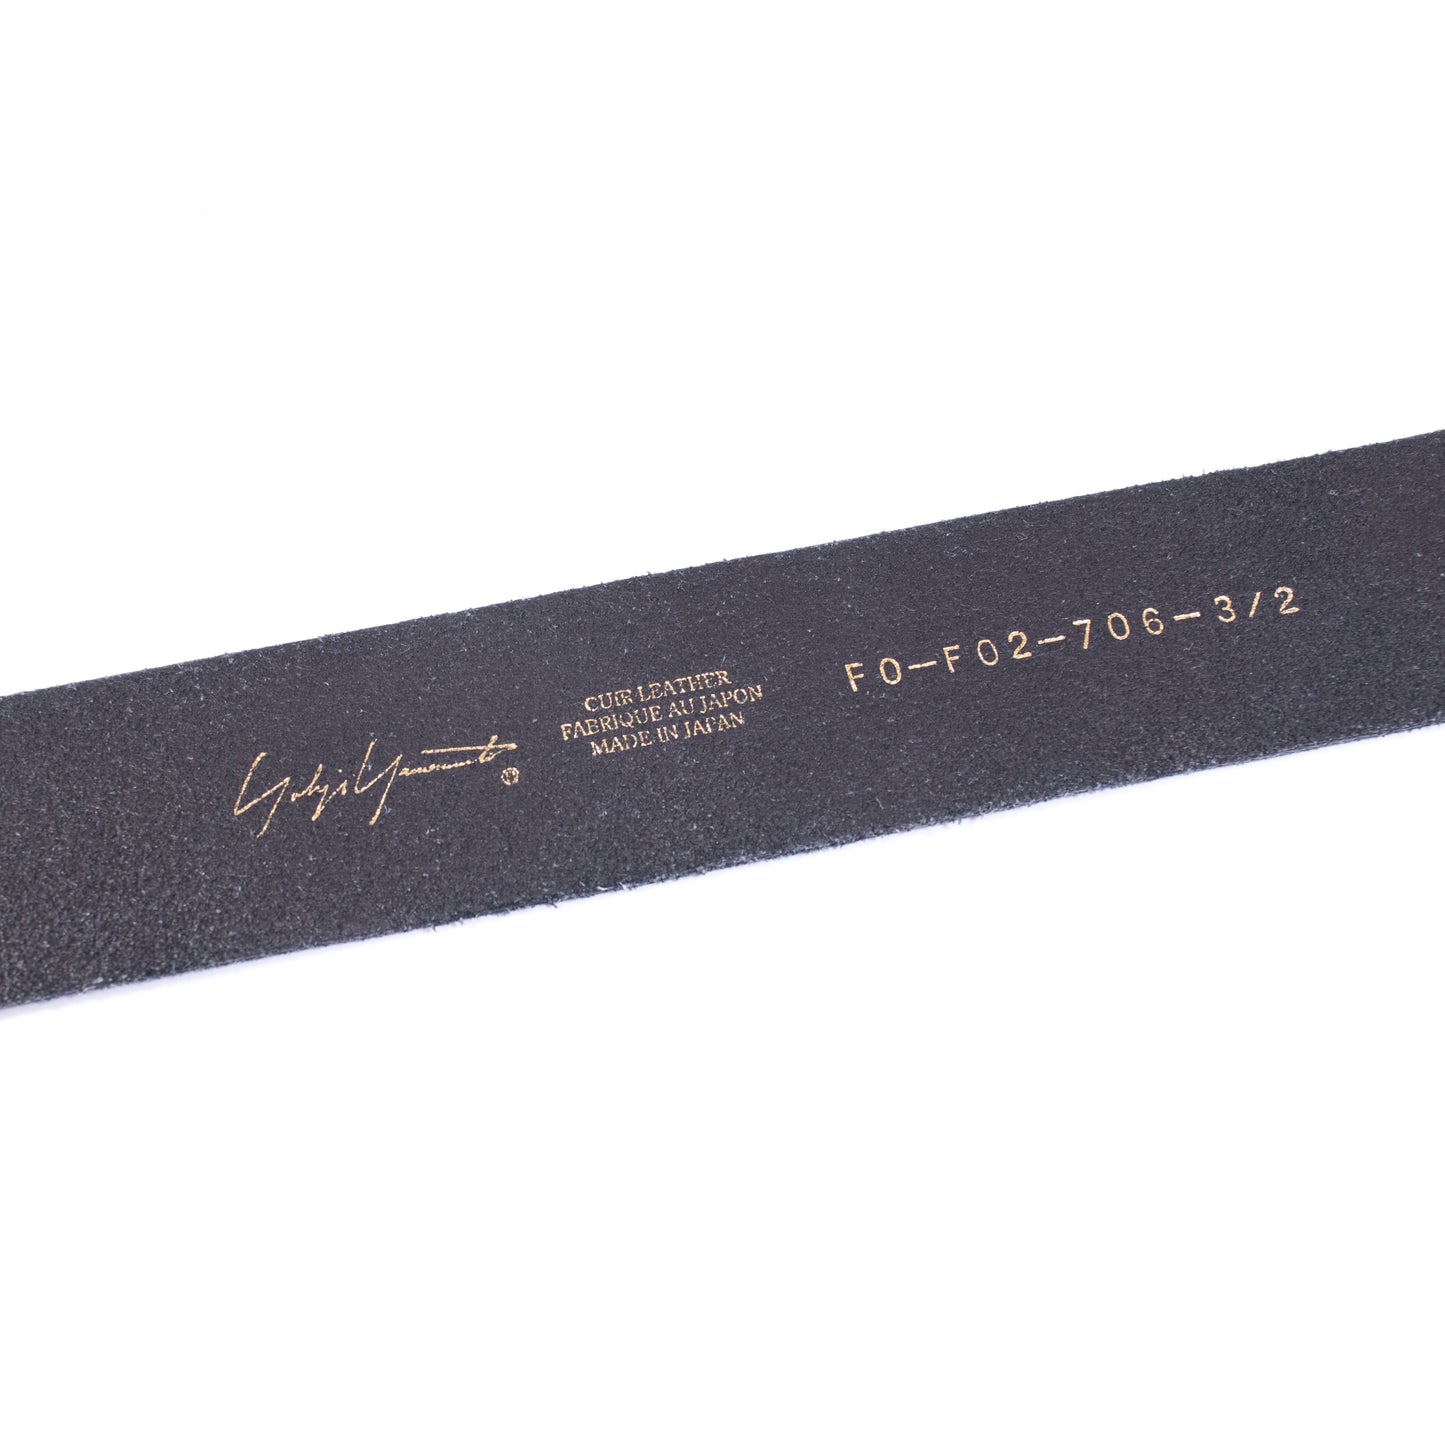 Yohji Yamamoto Leather Belt